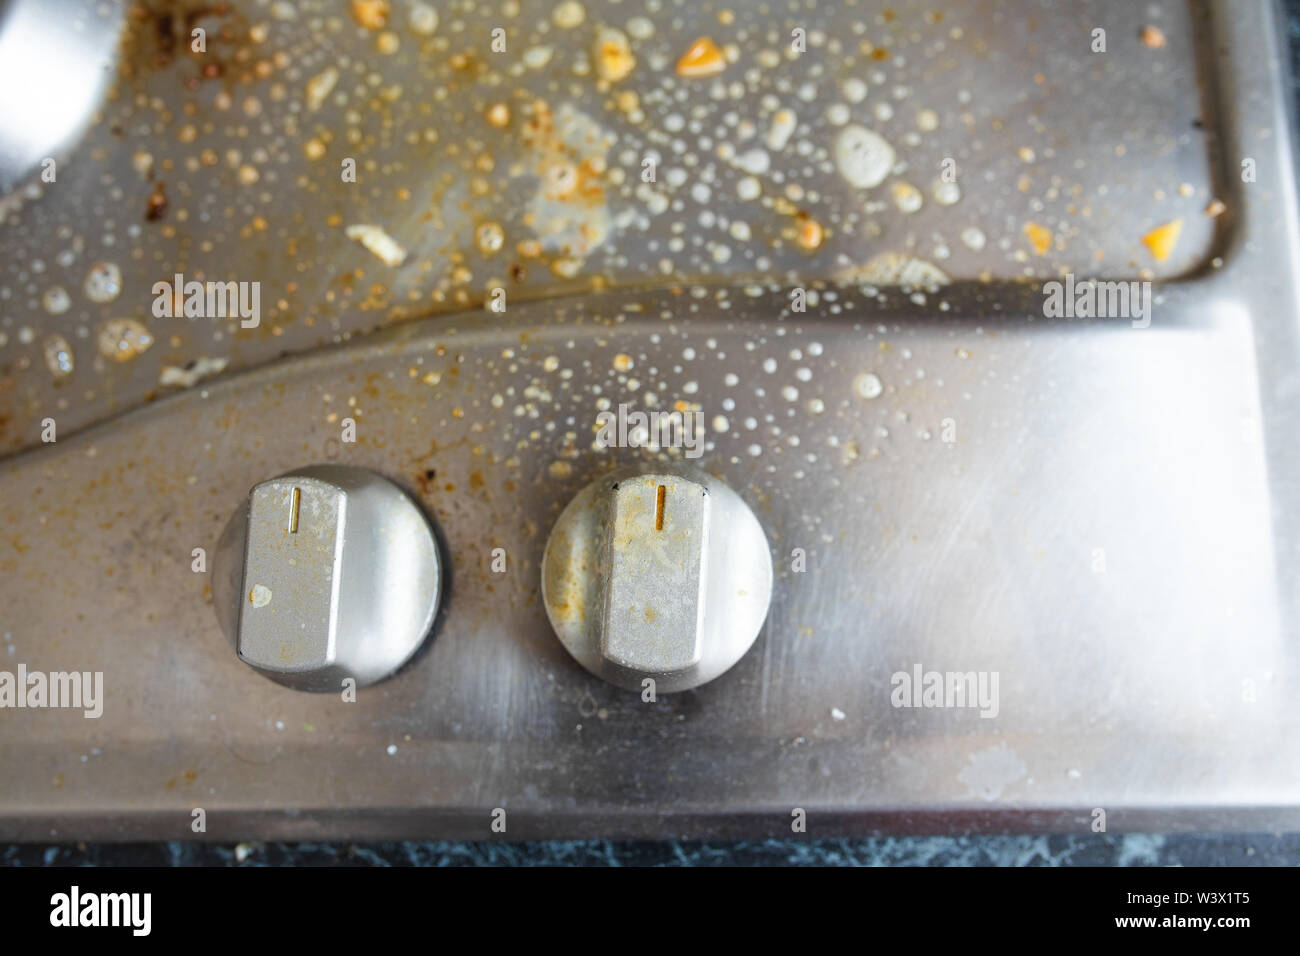 Il processo di lavaggio del fornello a gas.Close-up di sporco fornello a gas coperta con un prodotto chimico per il liquido di lavaggio. I lavori domestici o domestiche concetto. Foto Stock